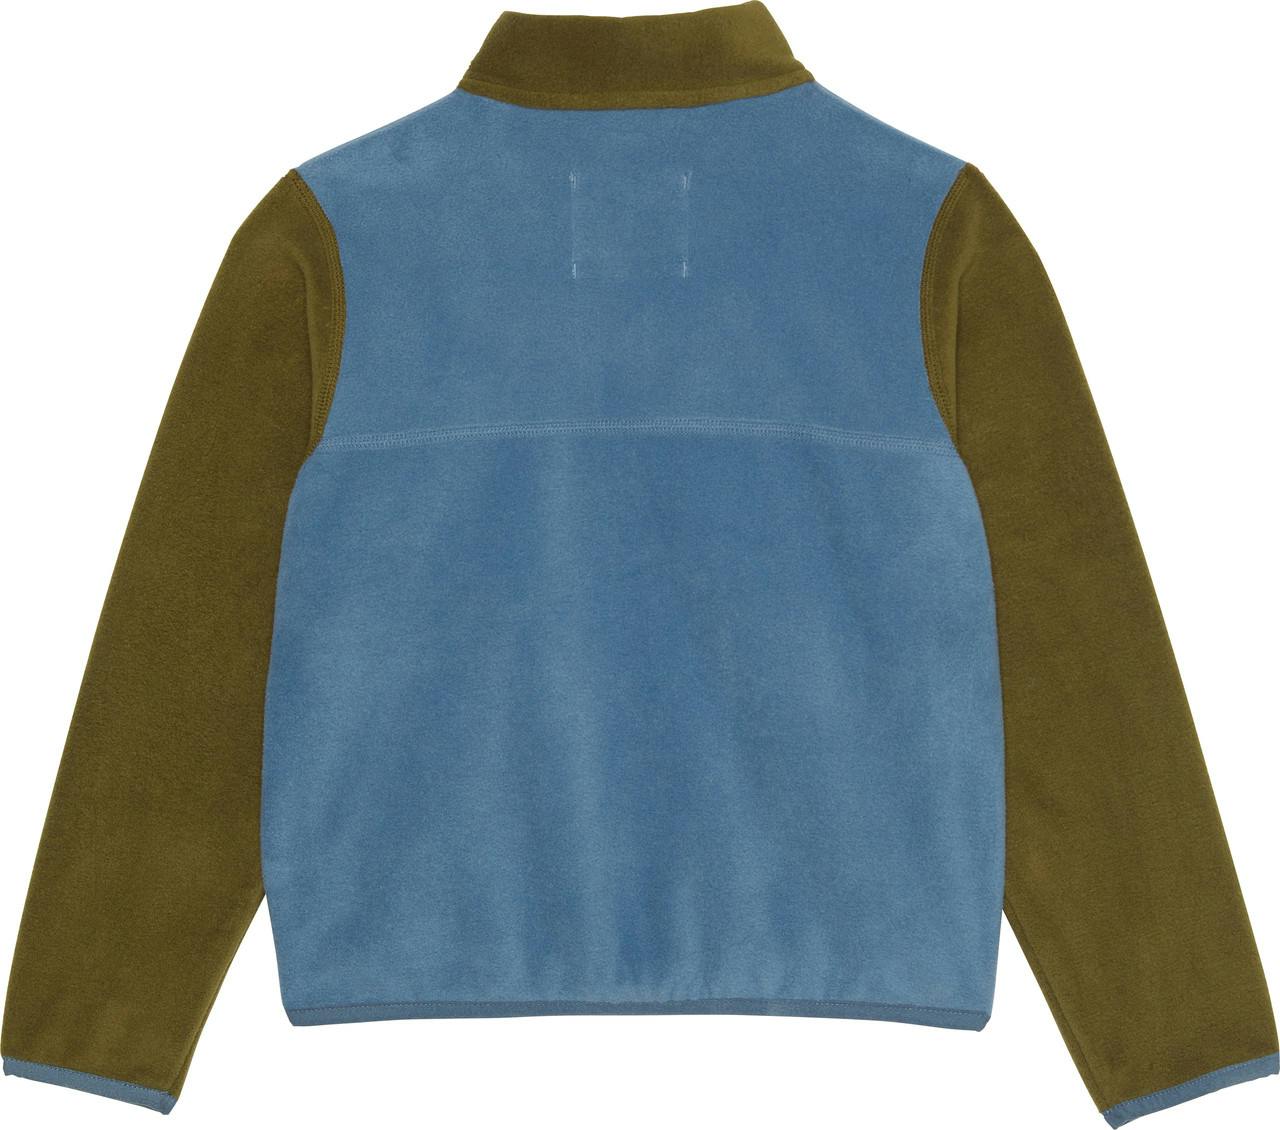 Fireside Fleece Jacket Harvest Gold/Blue Suede